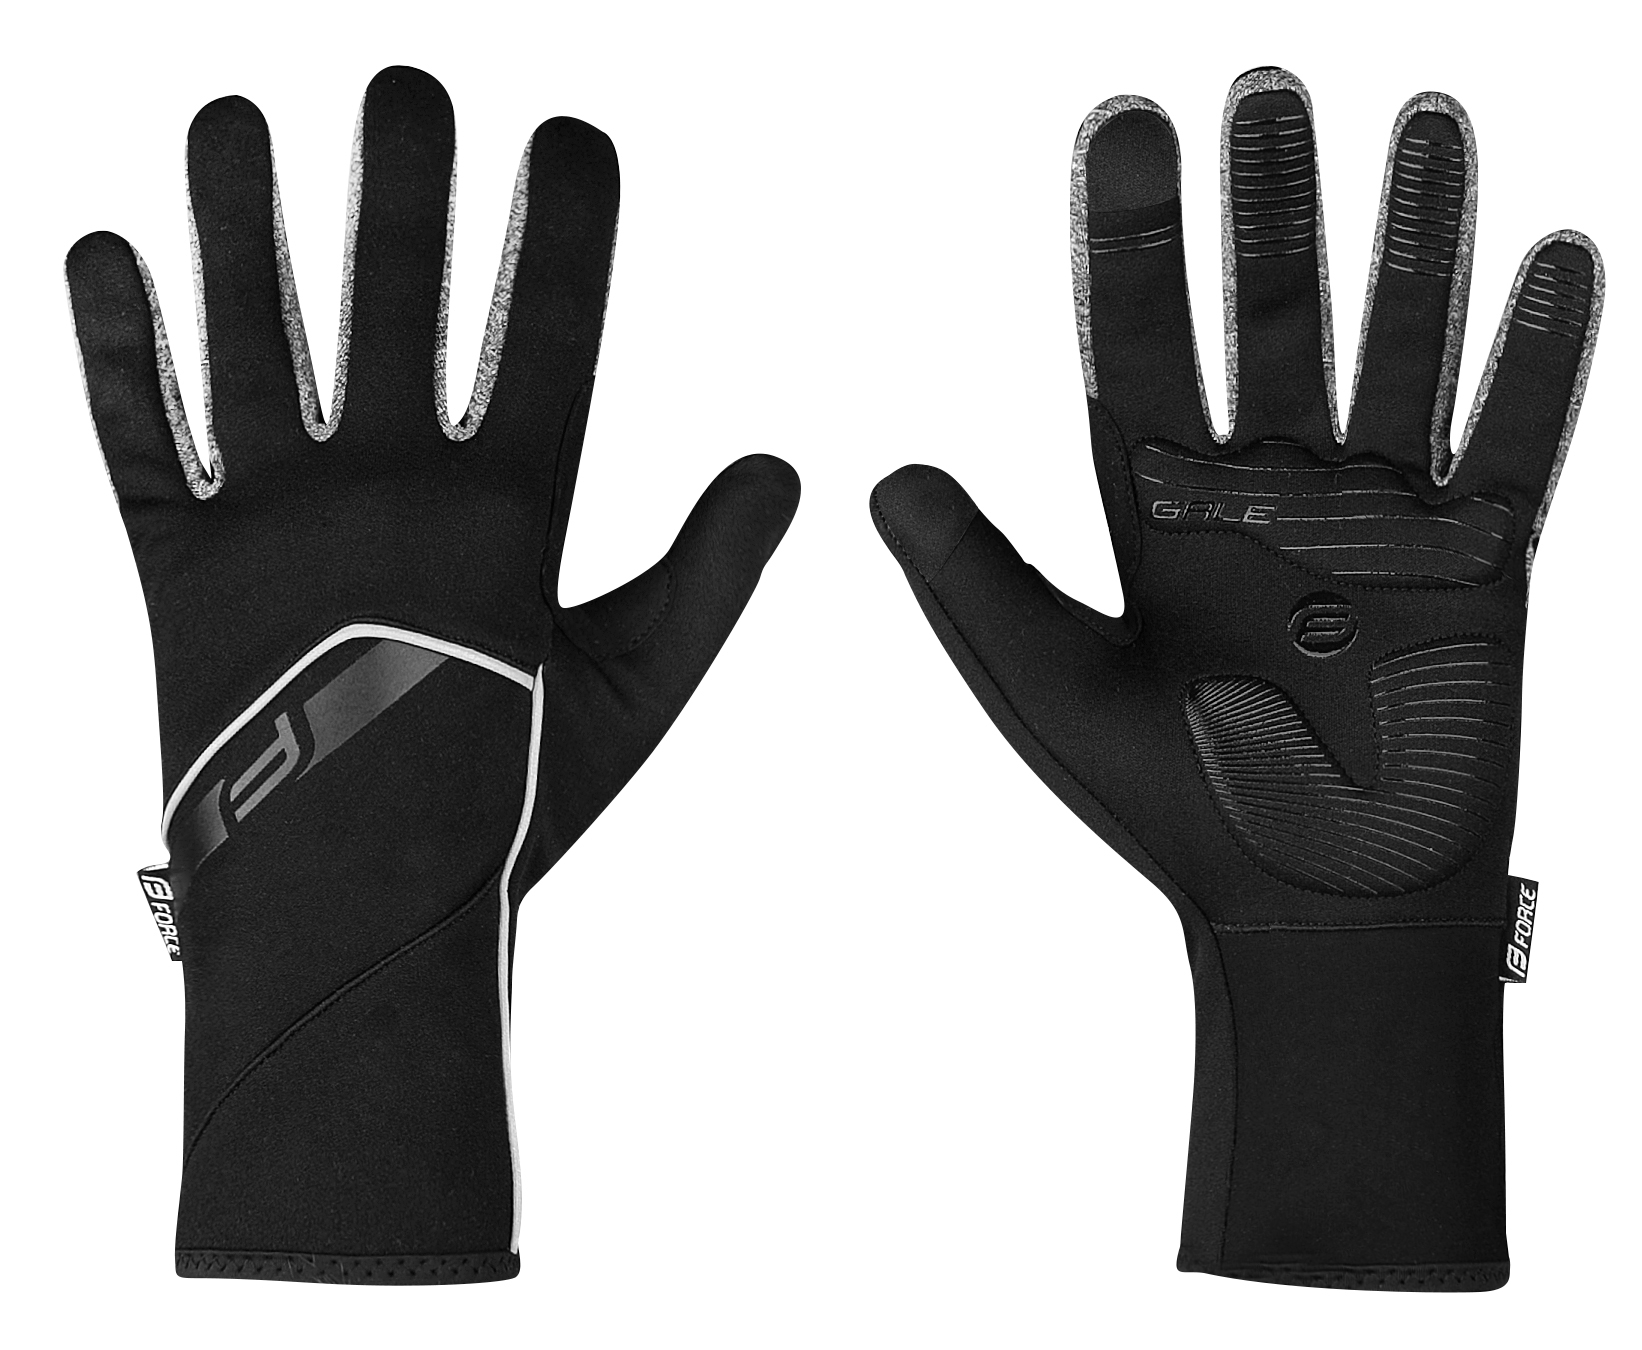 FORCE rukavice F GALE softshell, jaro-podzim, černé Velikost: S